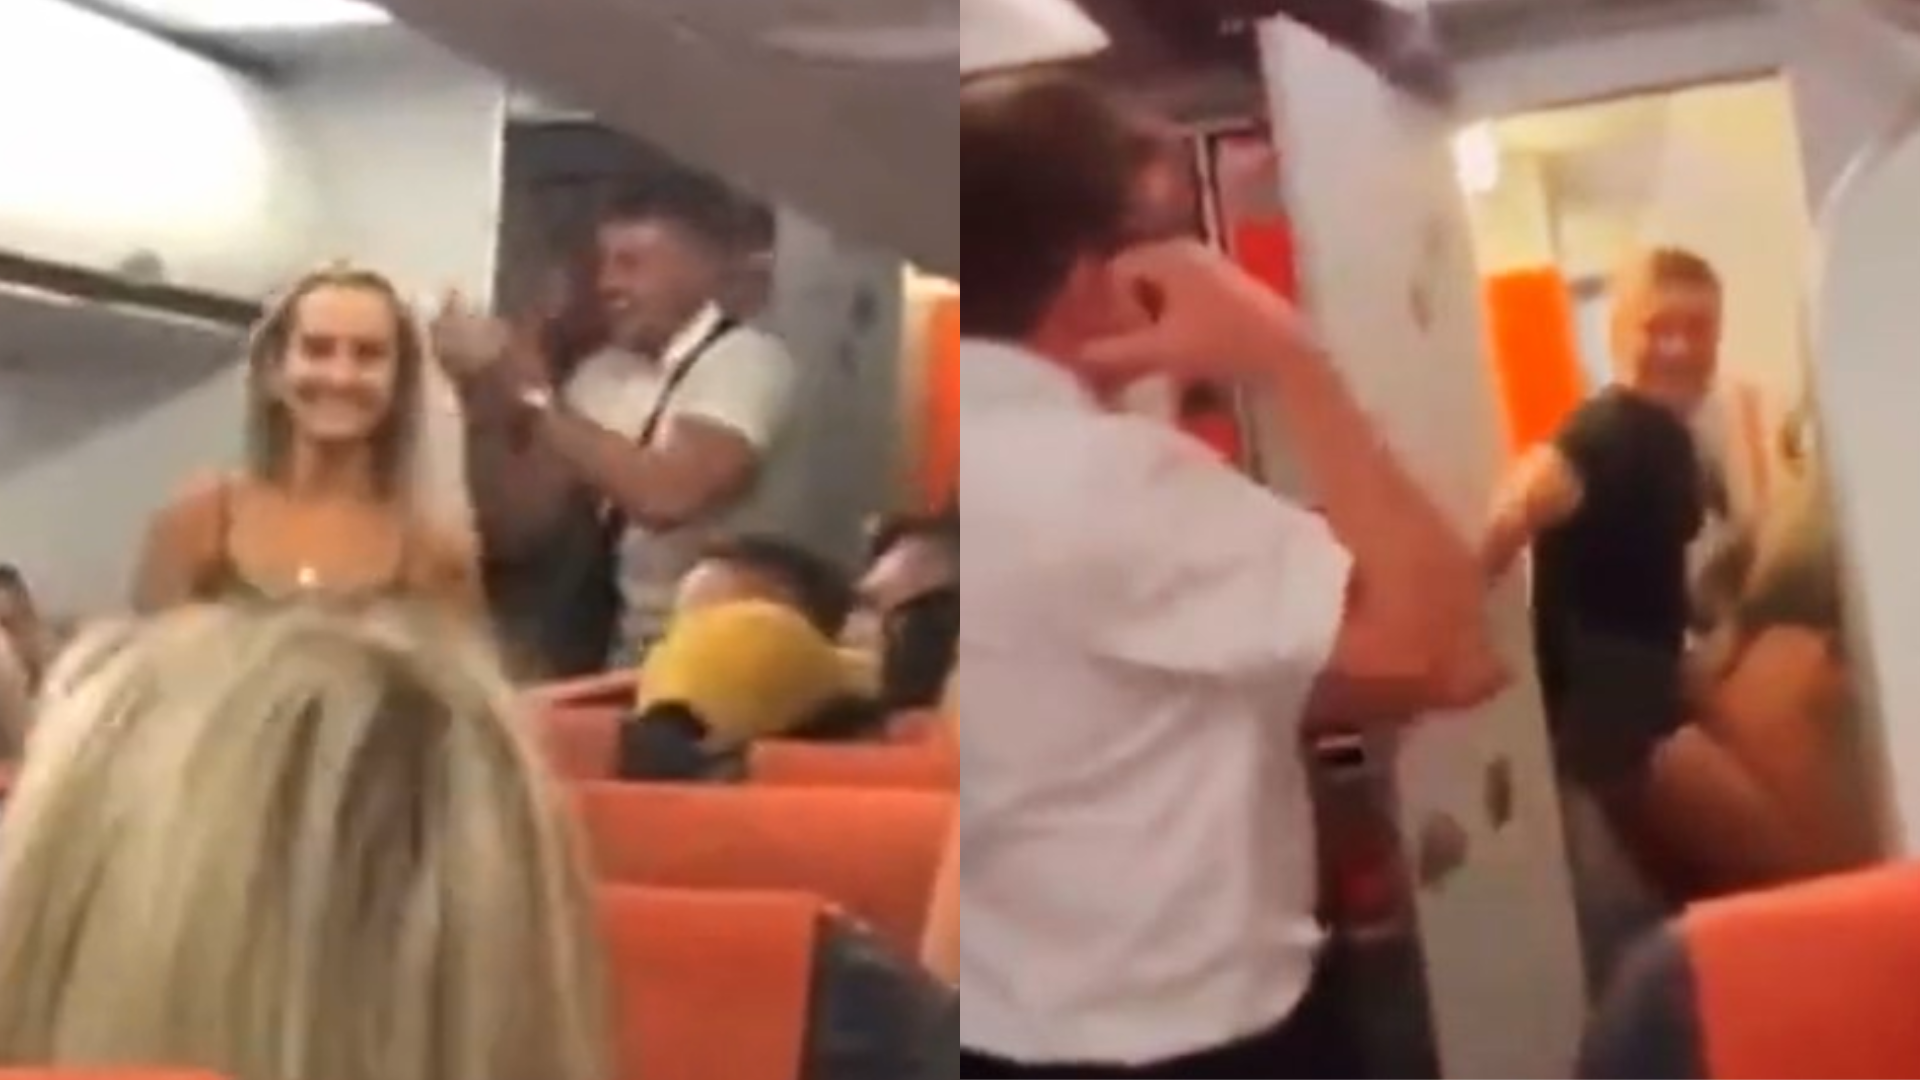 Novo vídeo mostra como casal flagrado transando em banheiro de avião foi “recepcionado” pelo resto dos passageiros; assista